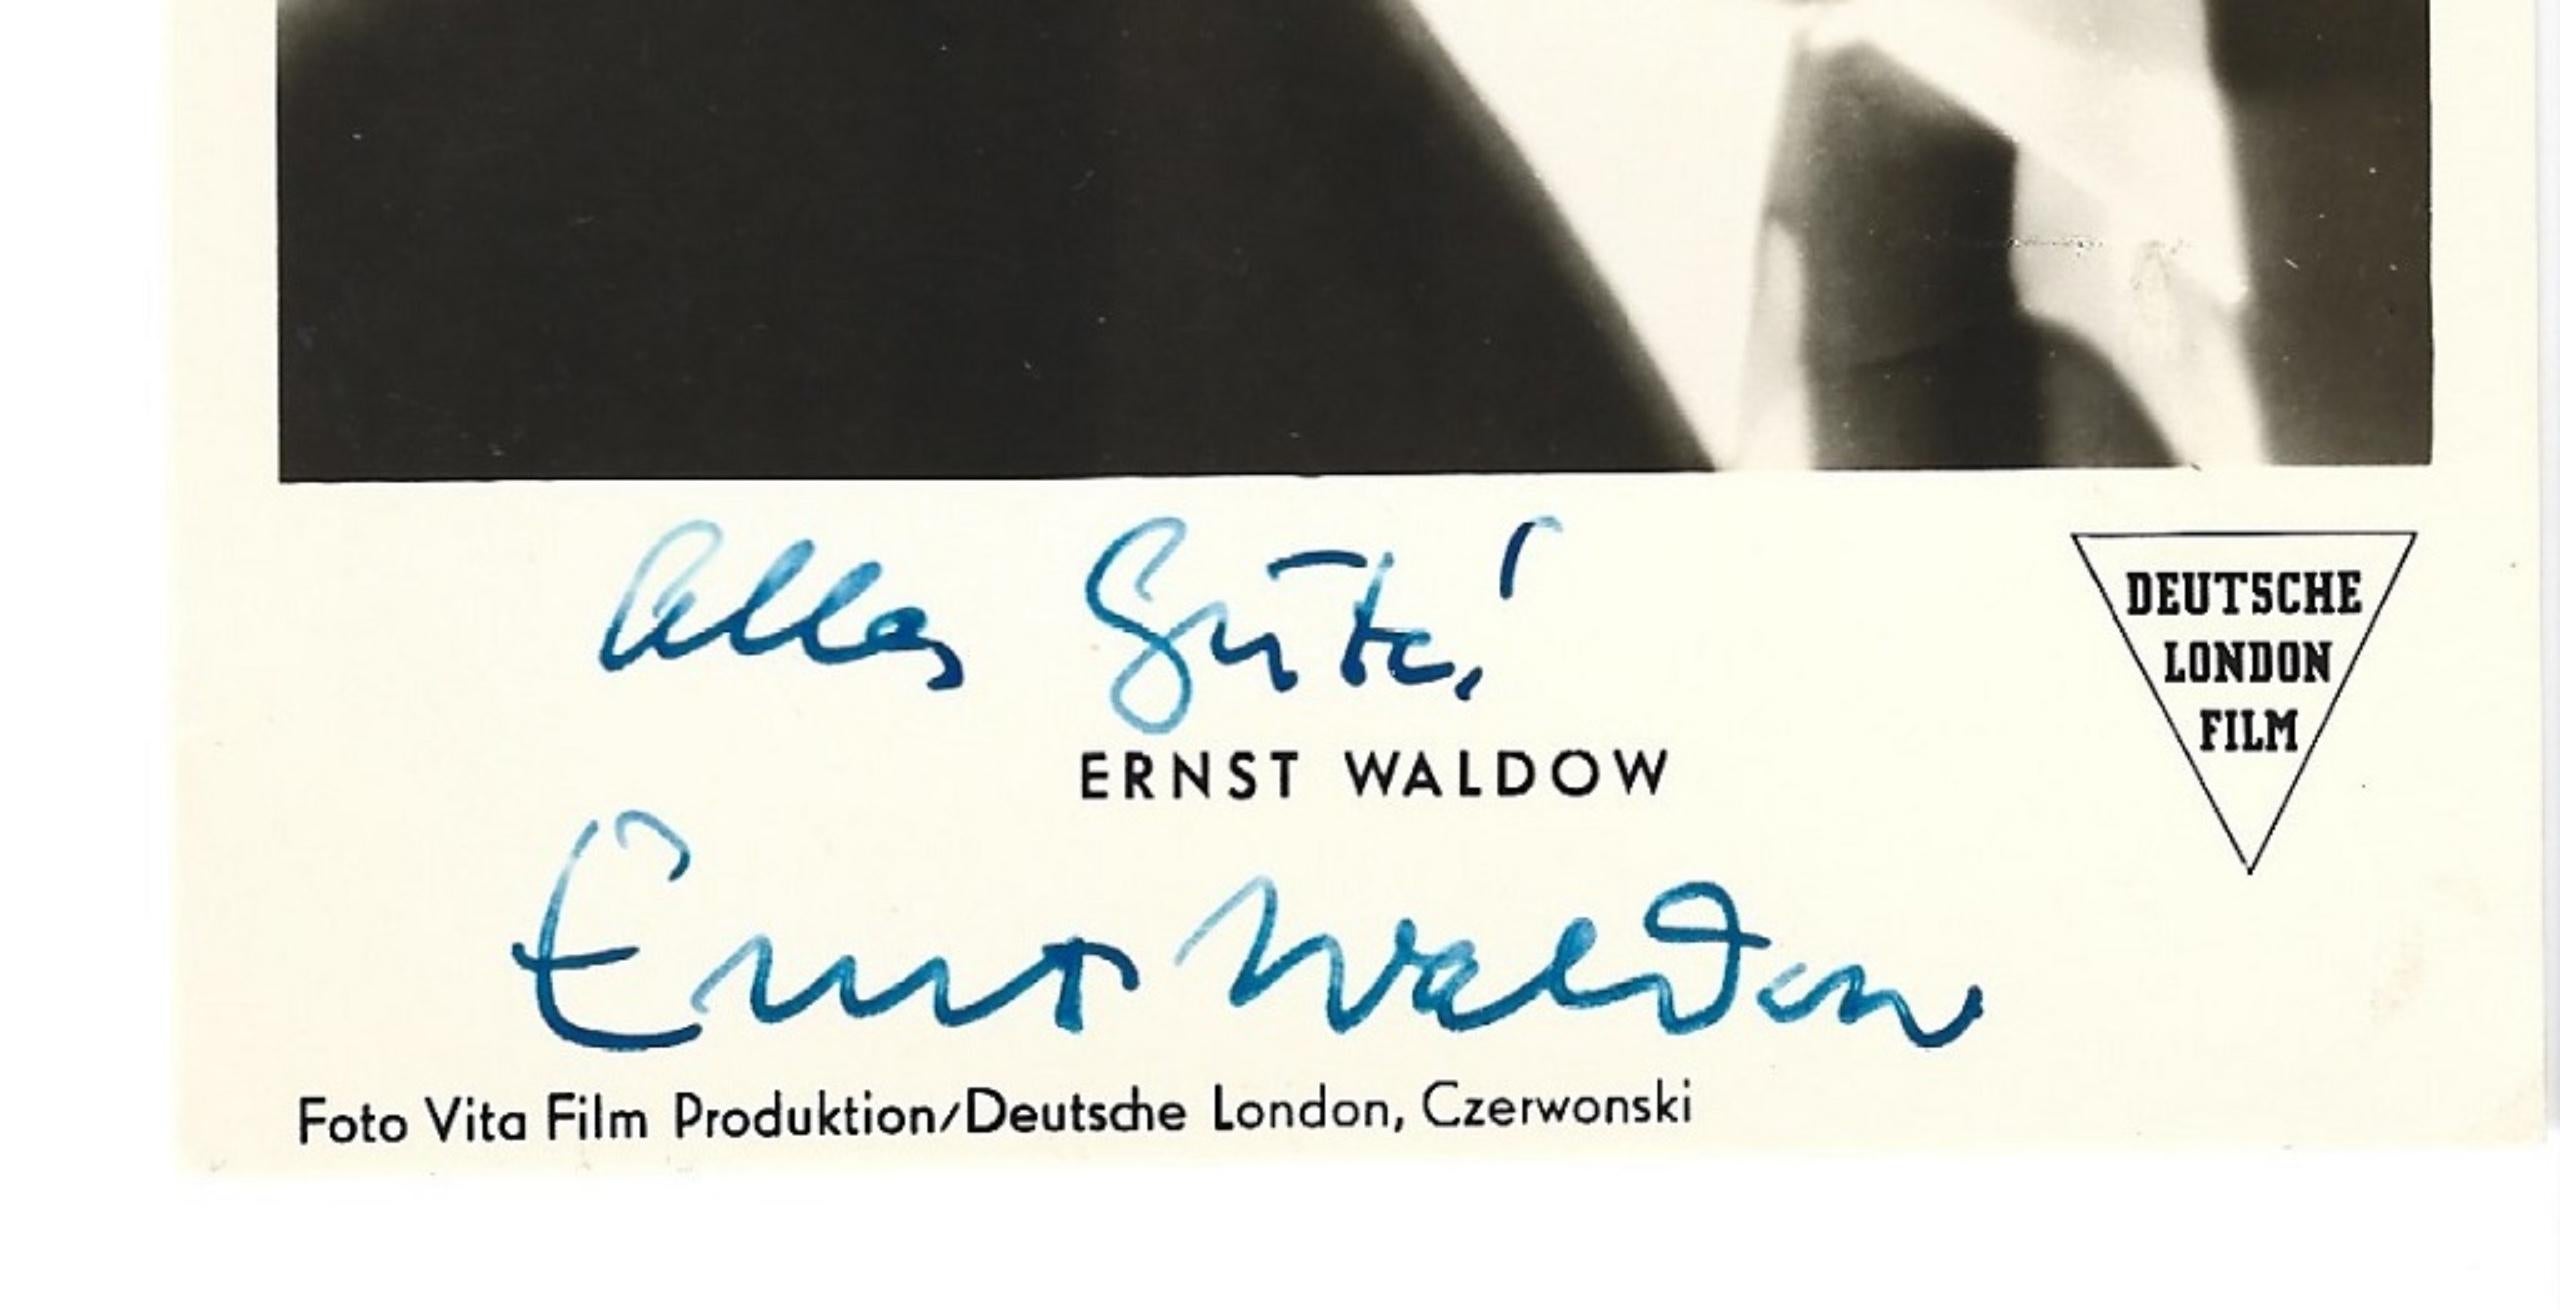 Autographisches Porträt von Ernst Waldow - Vintage b/w Postcard - 1950er Jahre – Photograph von Unknown